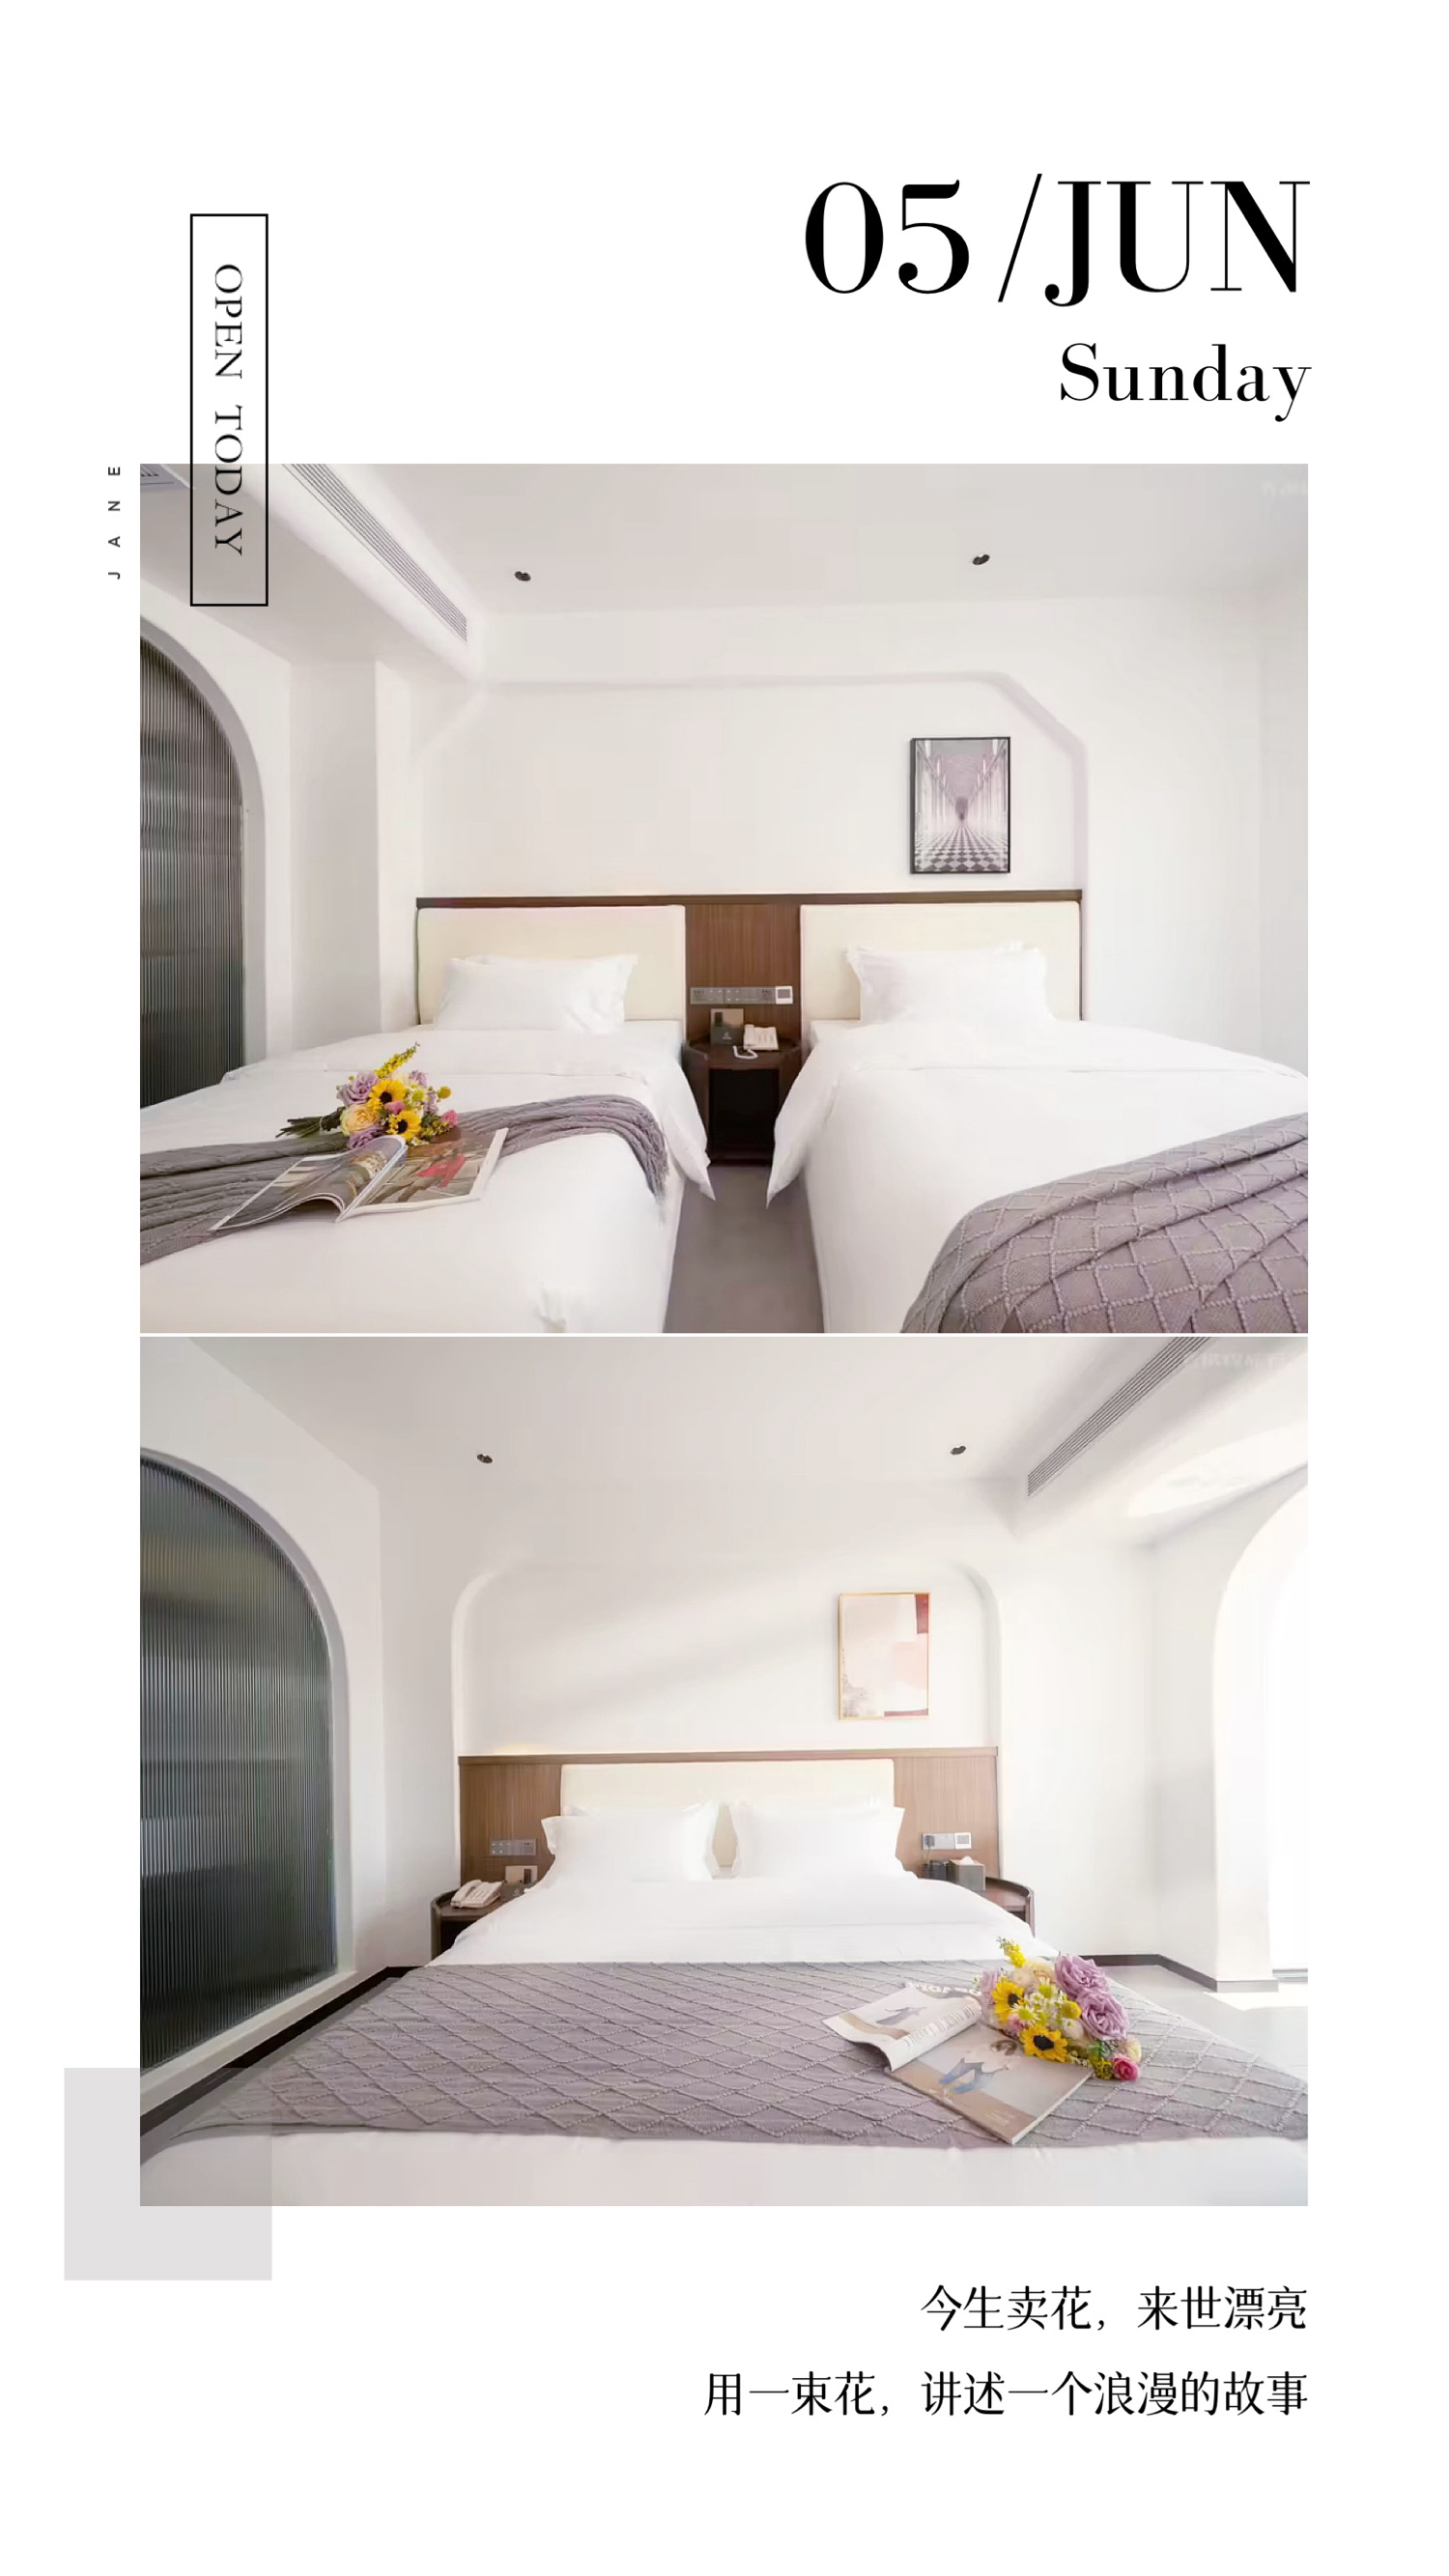 在西双版纳住到一家很舒服的酒店🏨还可看到澜沧江❗ 来西双版纳旅游前对比了好多家酒店🤔 最后在舒适度、